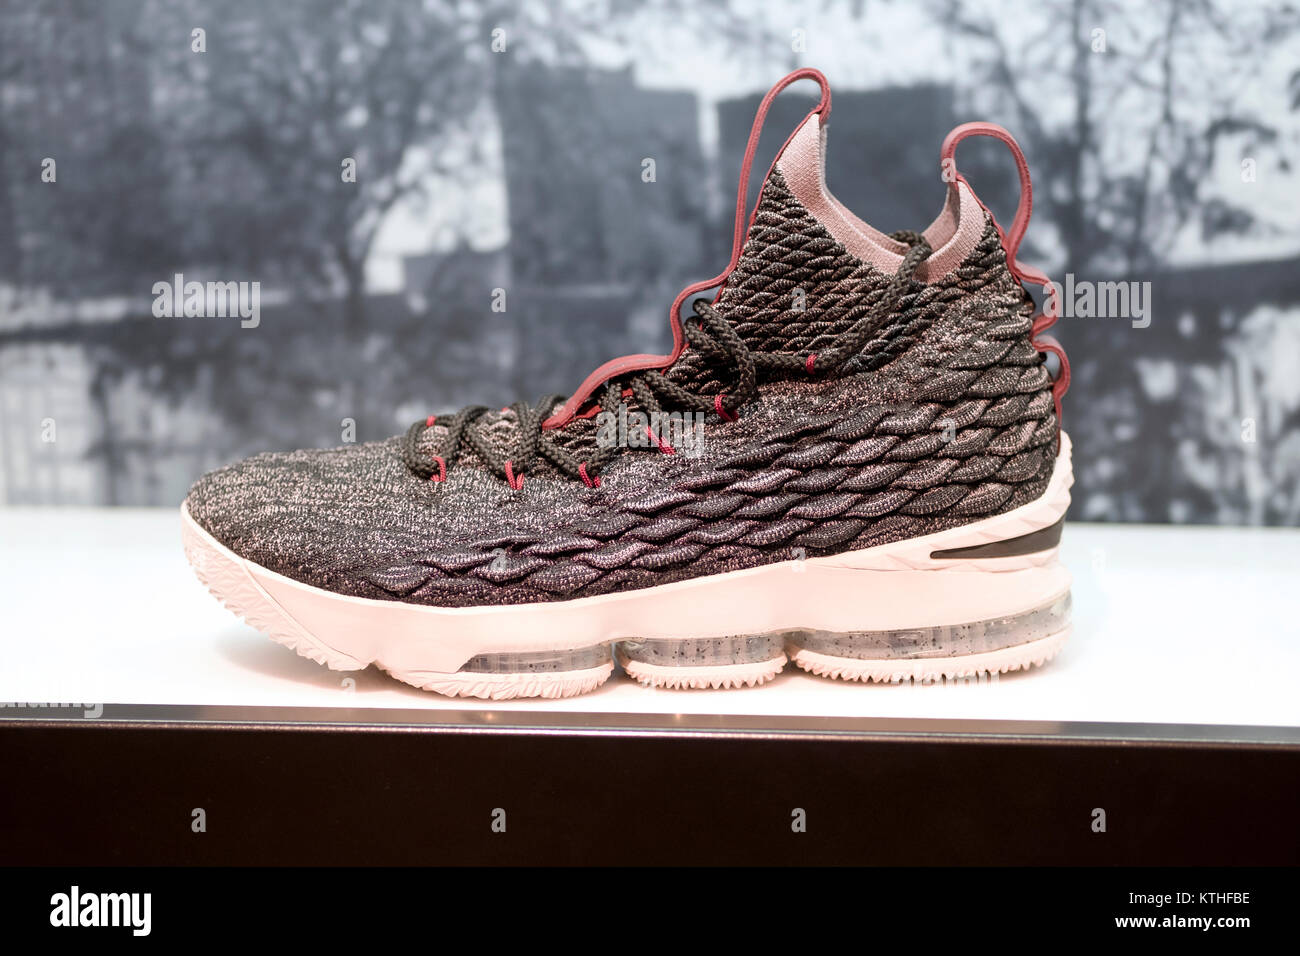 Ein $ 185 Paar Lebron 15 Nike Schuhe für Verkauf bei Footlocker im Queens  Center Shopping Mall in Elmhurst, Queens, New York City Stockfotografie -  Alamy